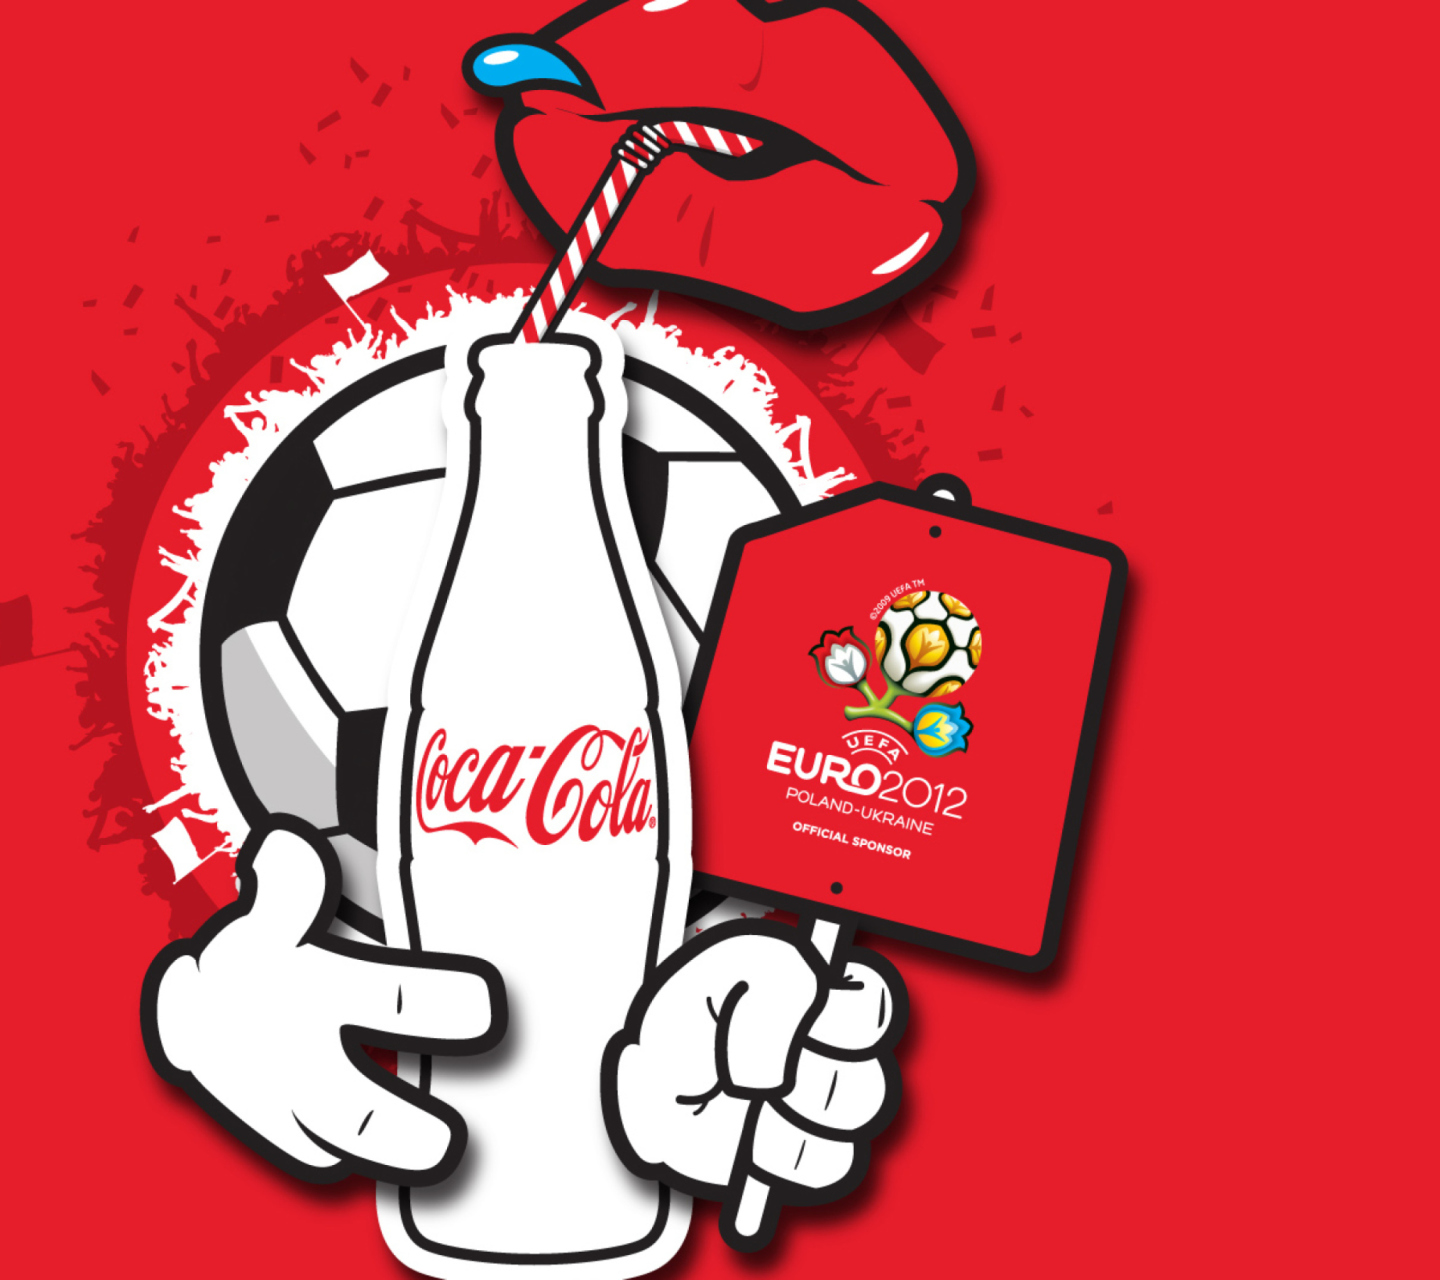 Fondo de pantalla Coca Cola & Euro 2012 full hd 1440x1280